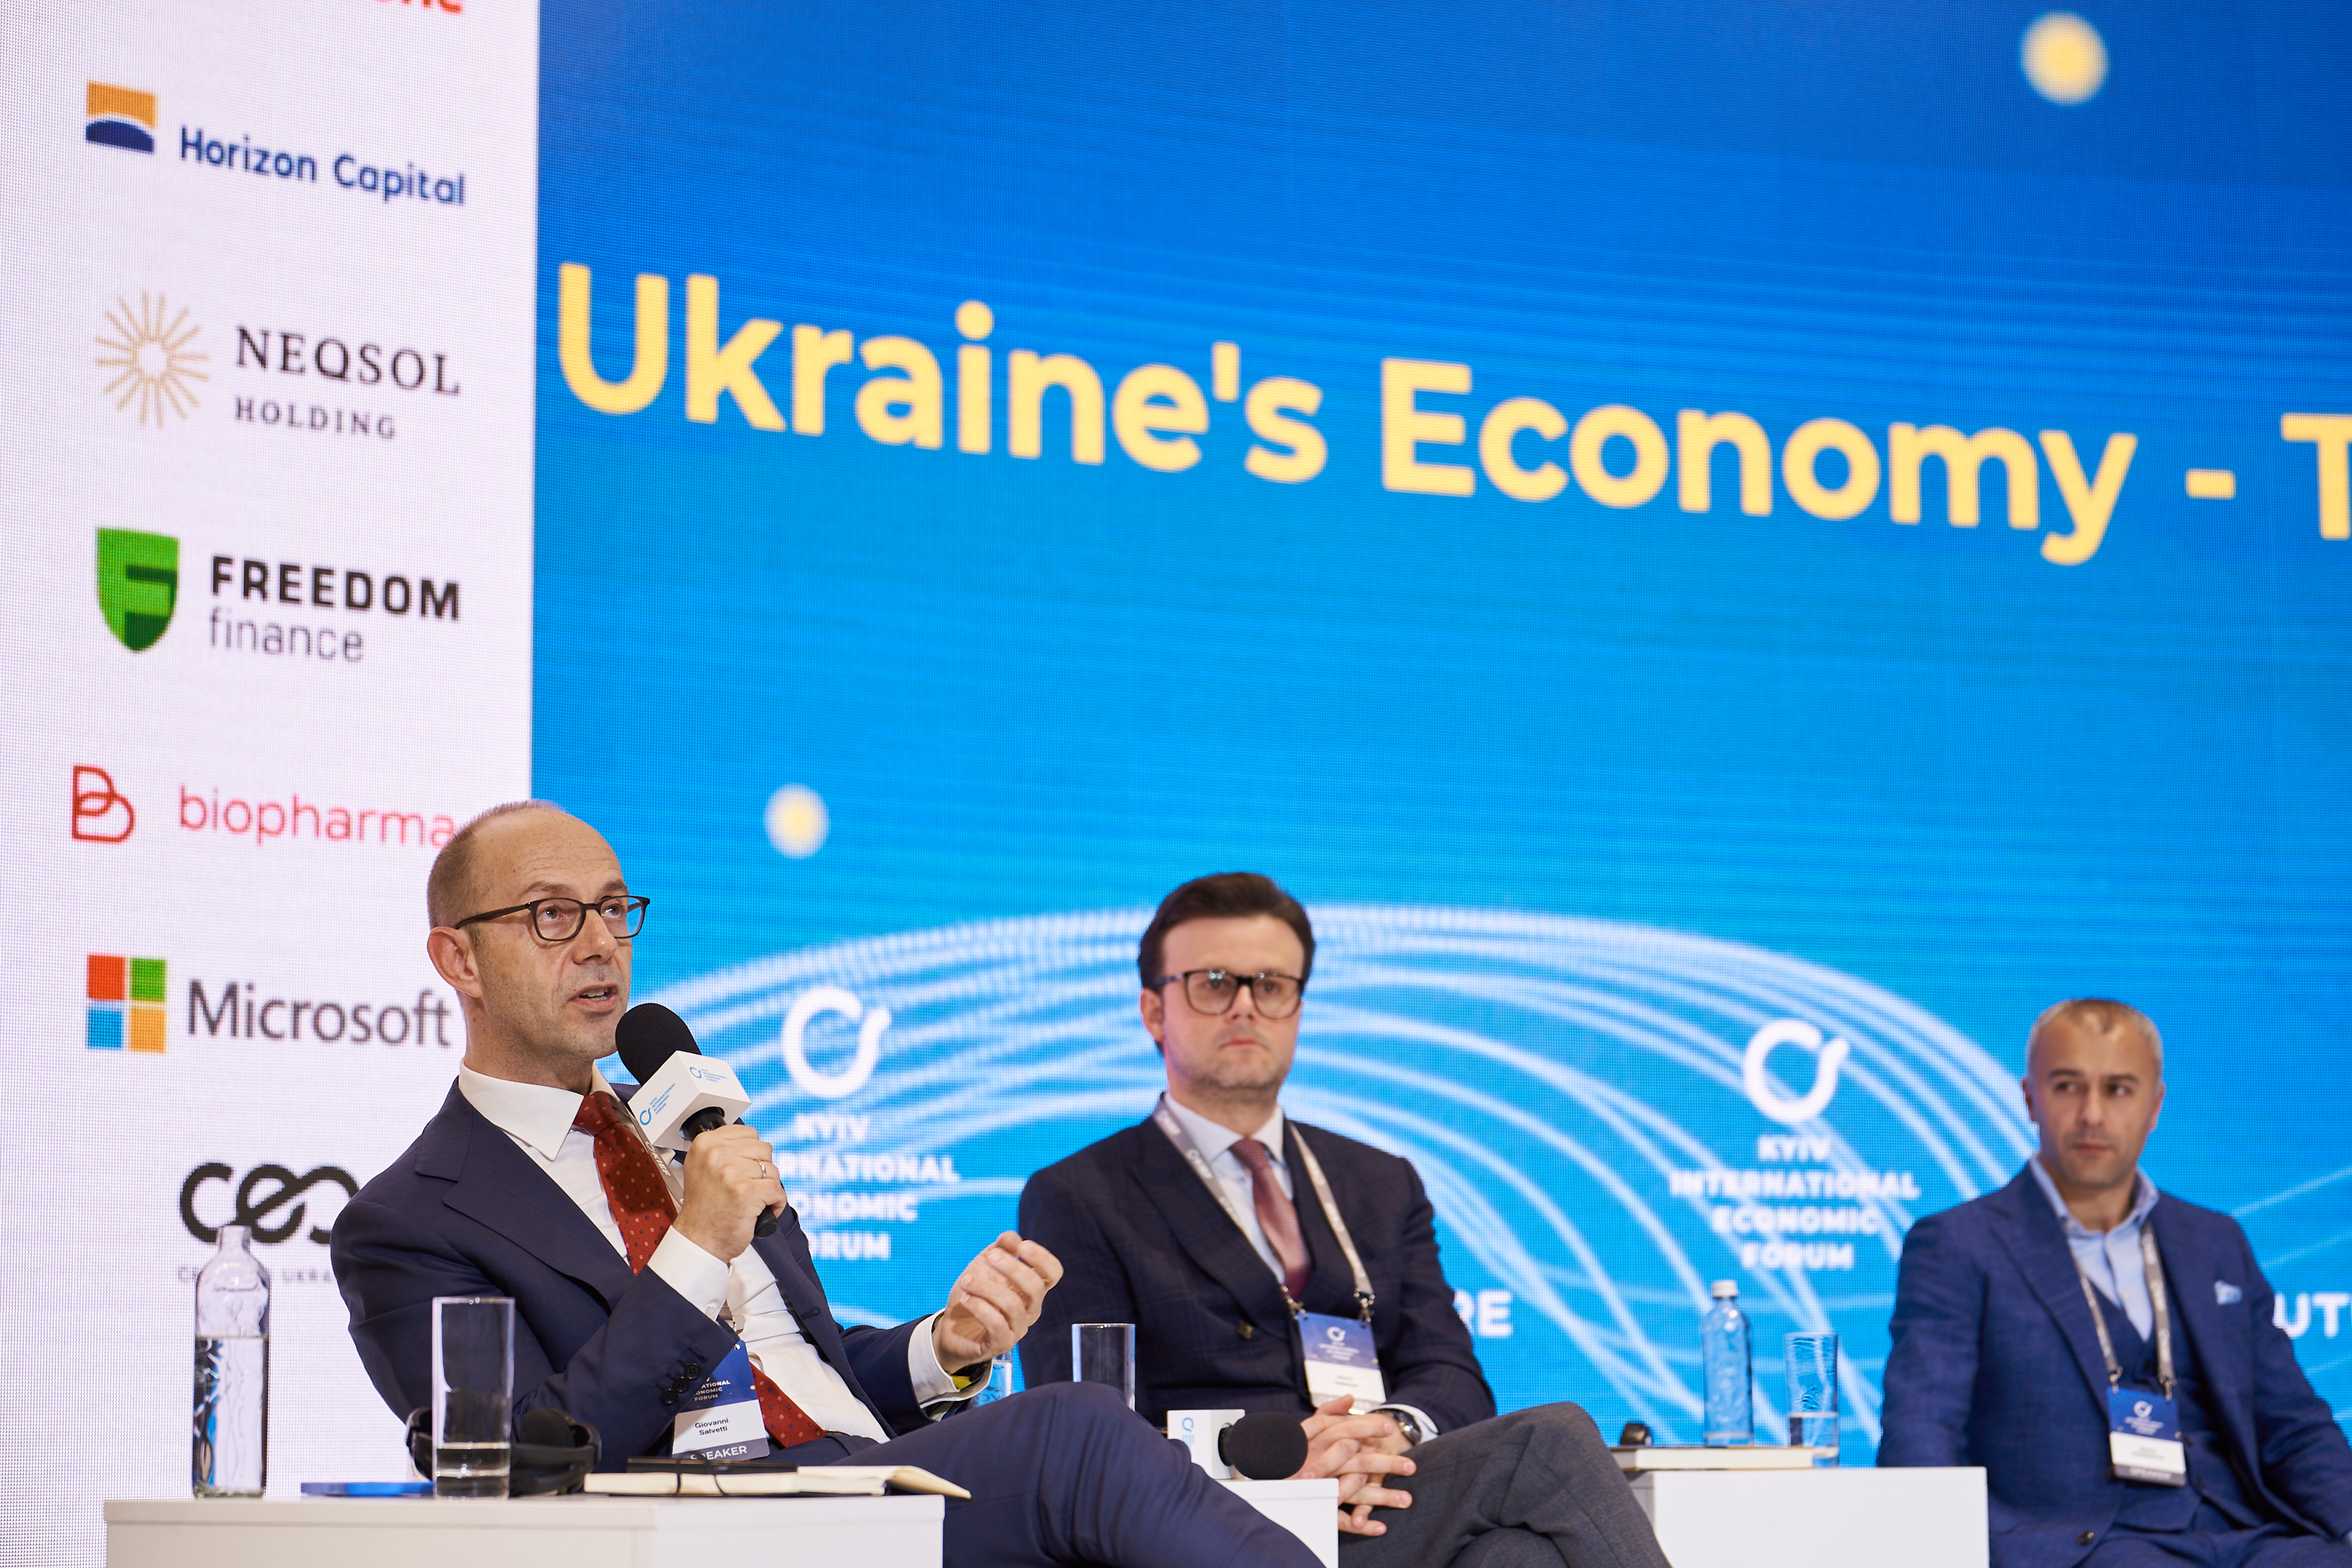 Экономика Украины - путь к триллиону КМЭФ 2021